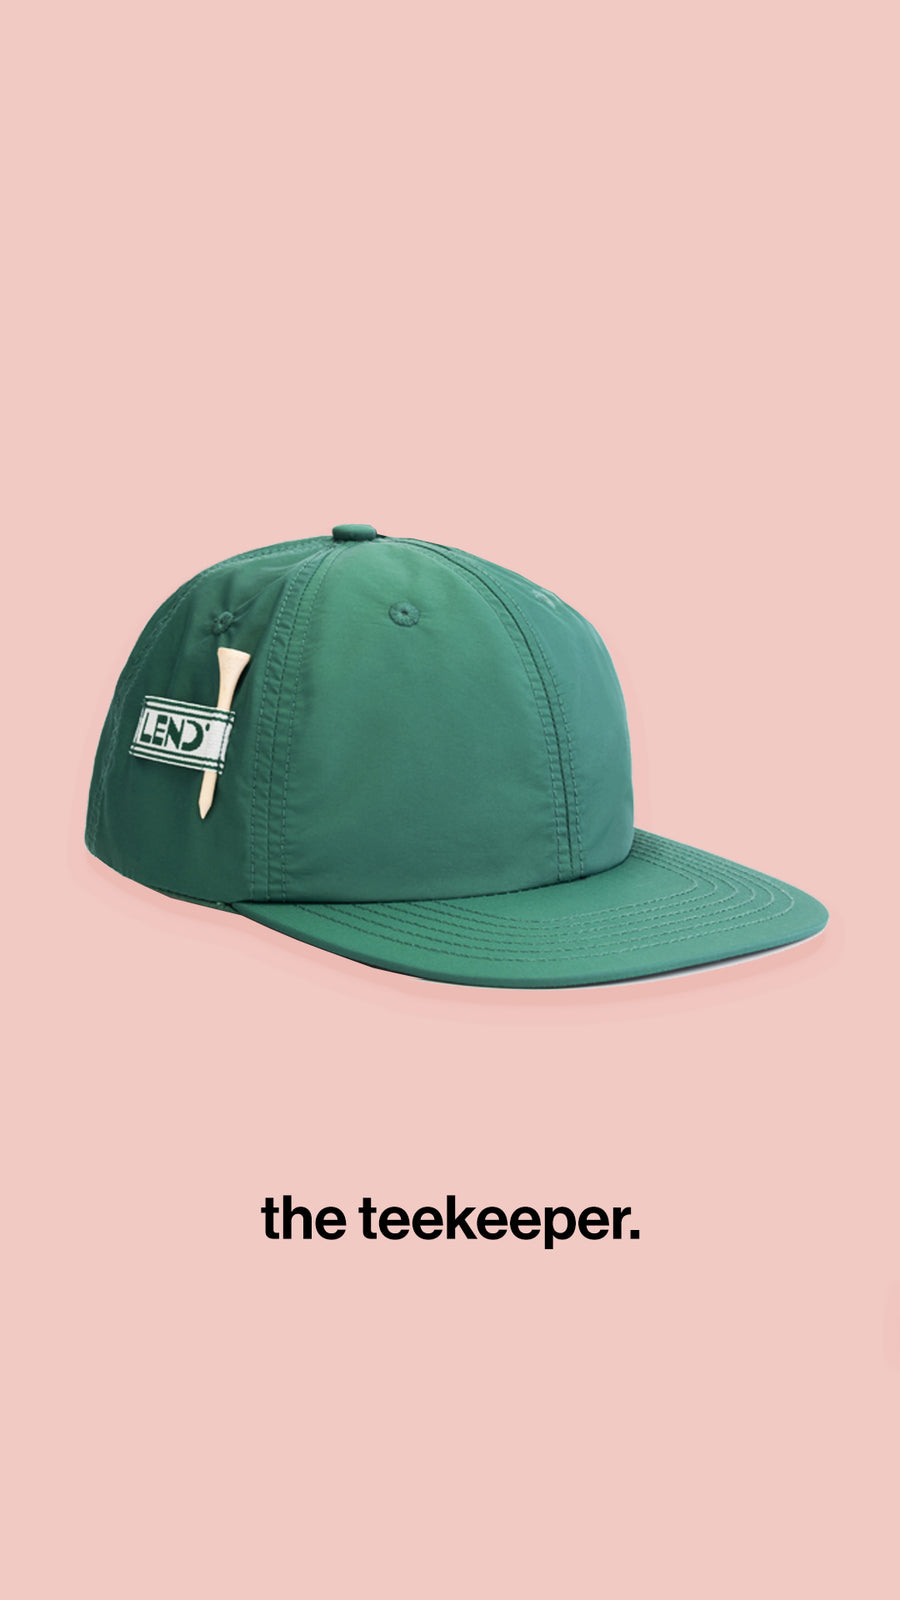 the teekeeper hat.